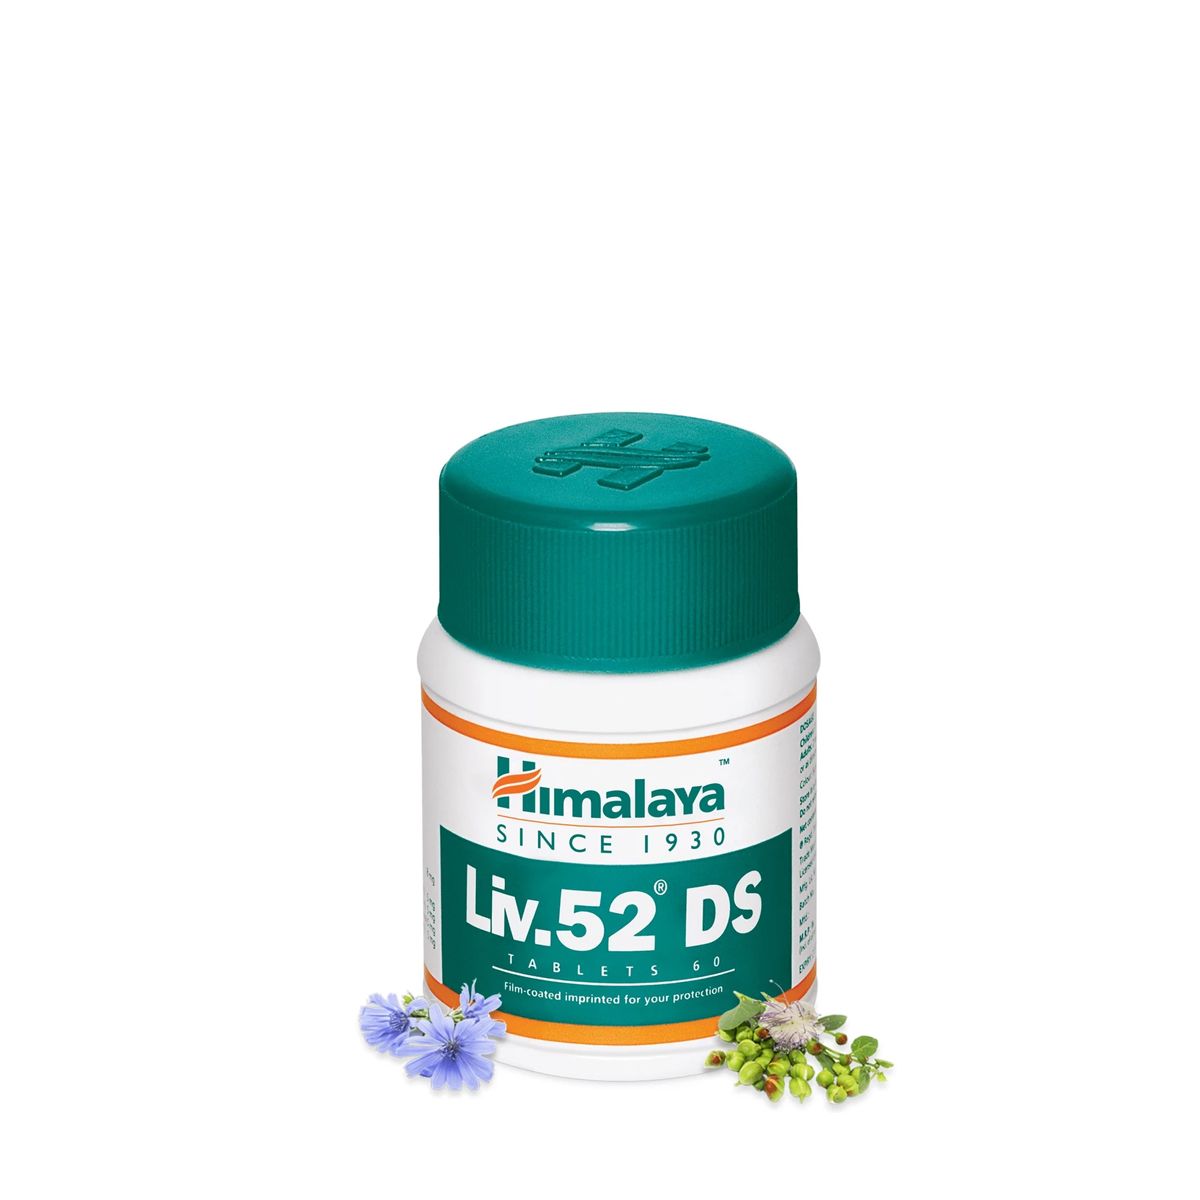 Dupla erősségű májvédő gyógynövény komplex, Himalaya LIV.52 DS, 60 tabletta